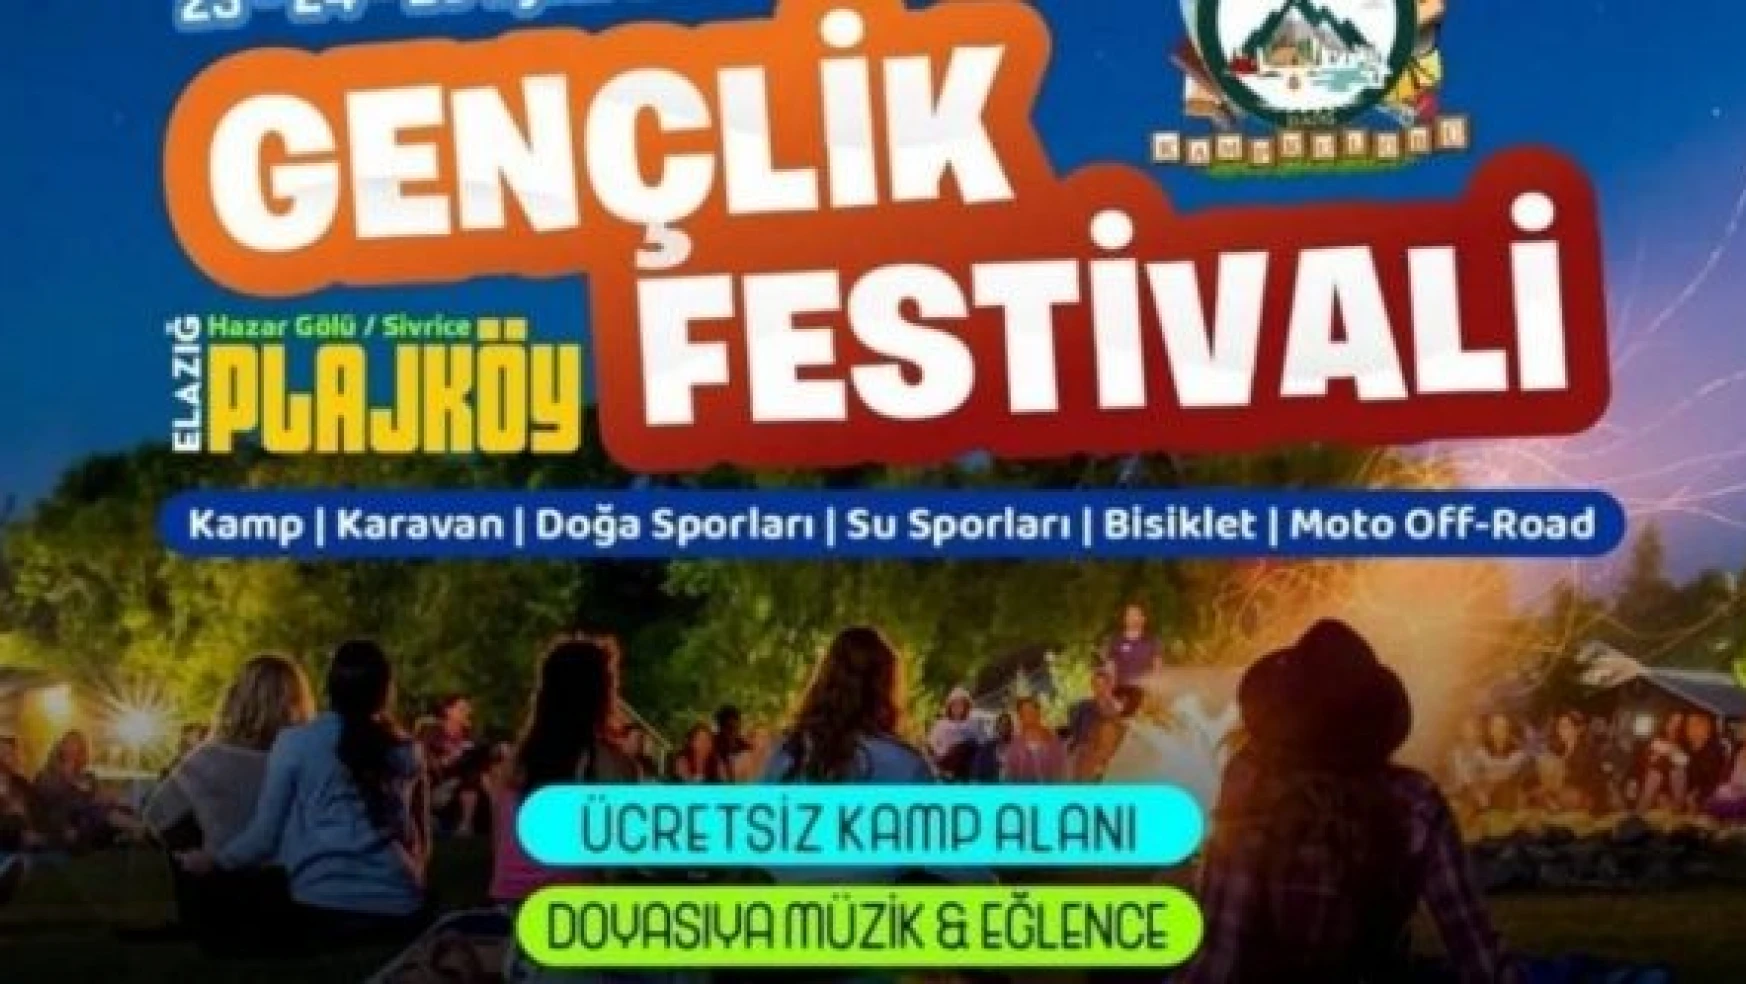 Elazığ'da 'Gençlik Festivali' düzenlenecek